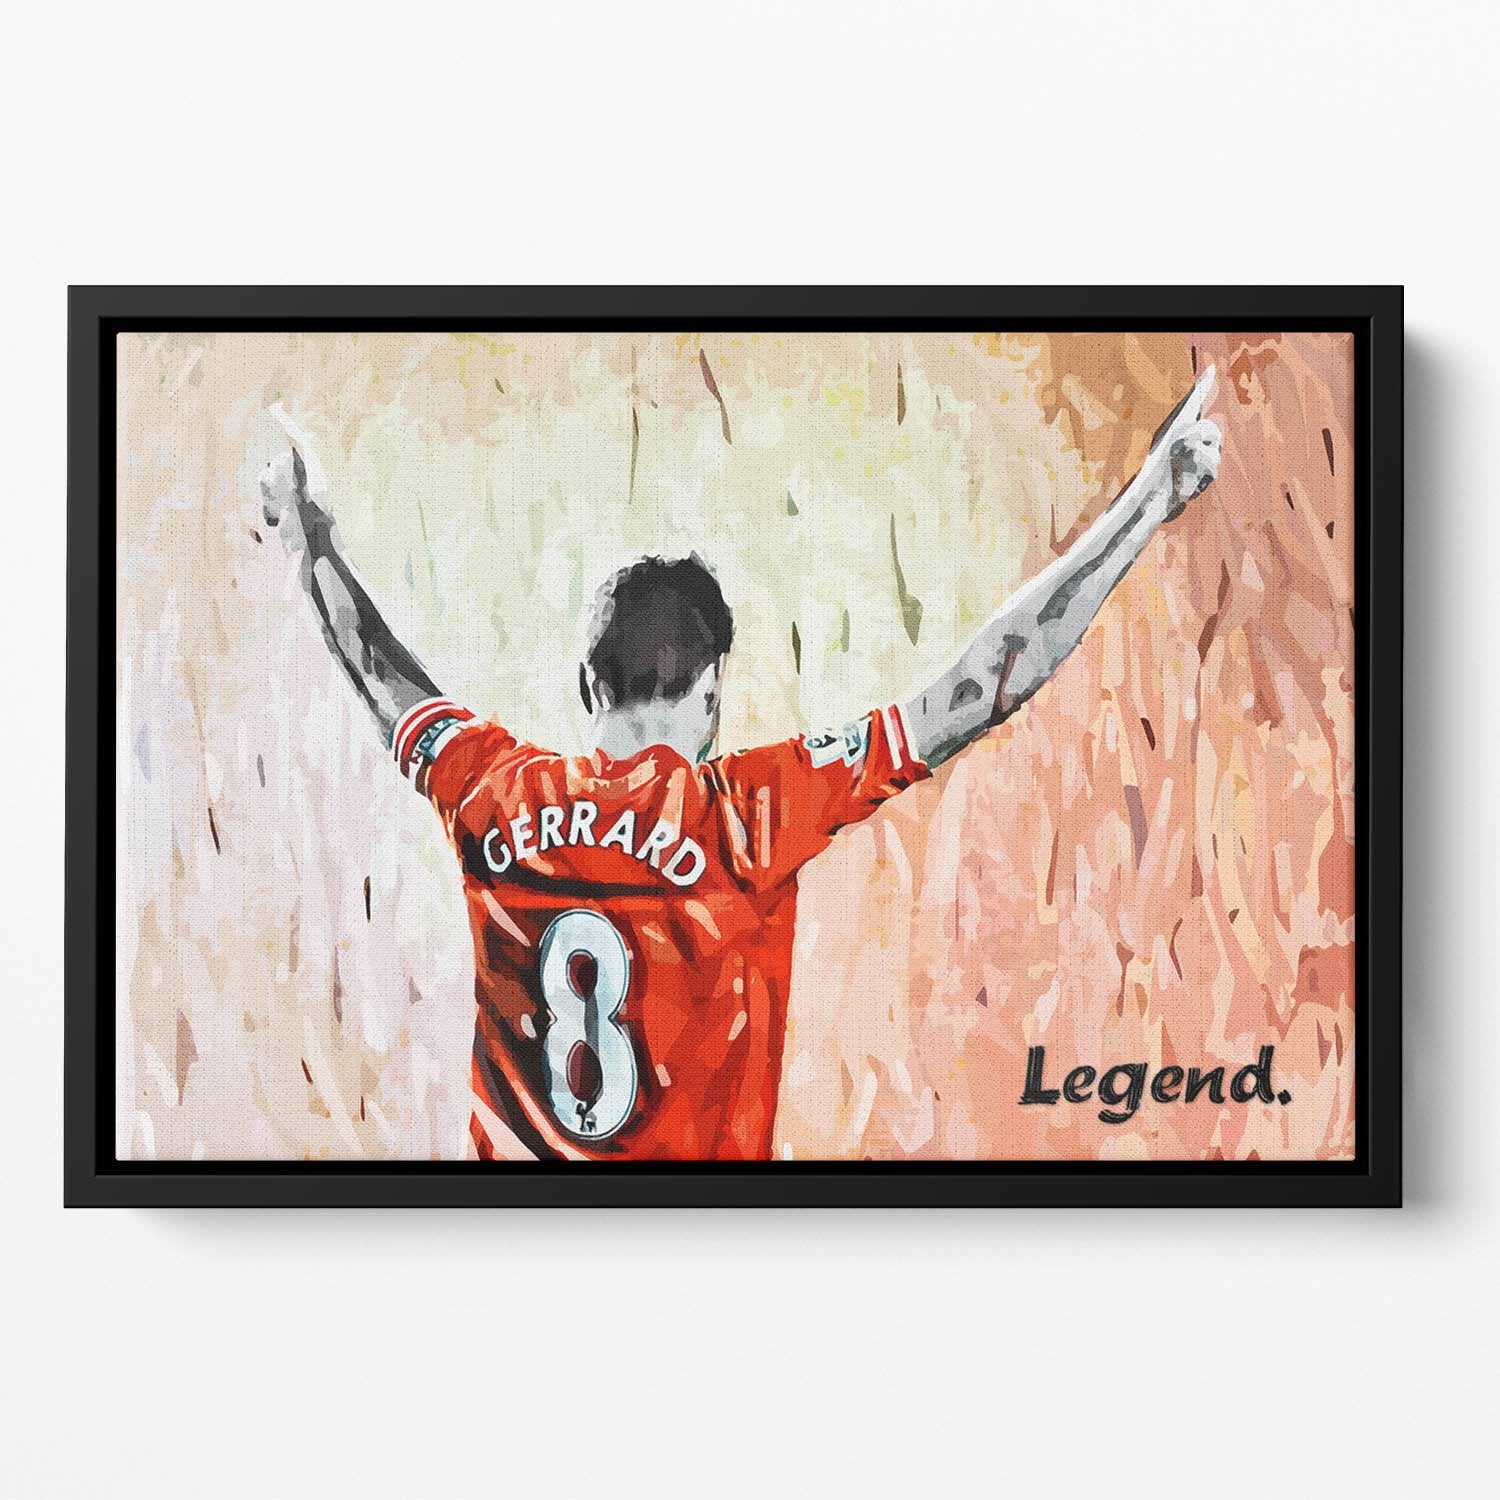 Steven Gerrard Legend Floating Framed Canvas